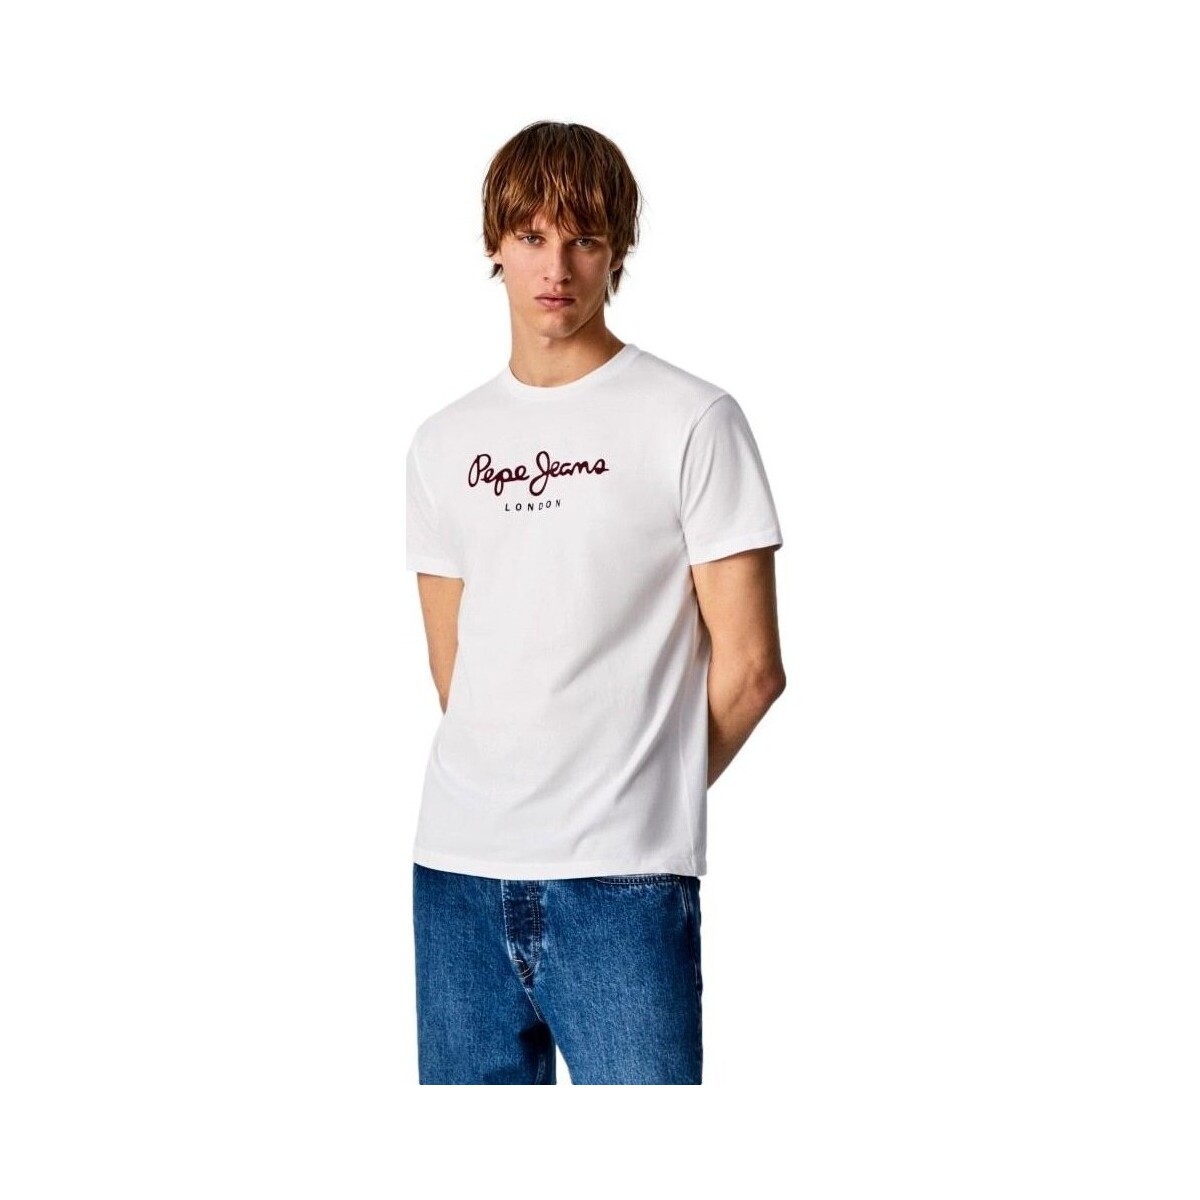 textil Herr T-shirts Pepe jeans CAMISETA CASUAL HOMBRE EGGO   PM508208 Vit